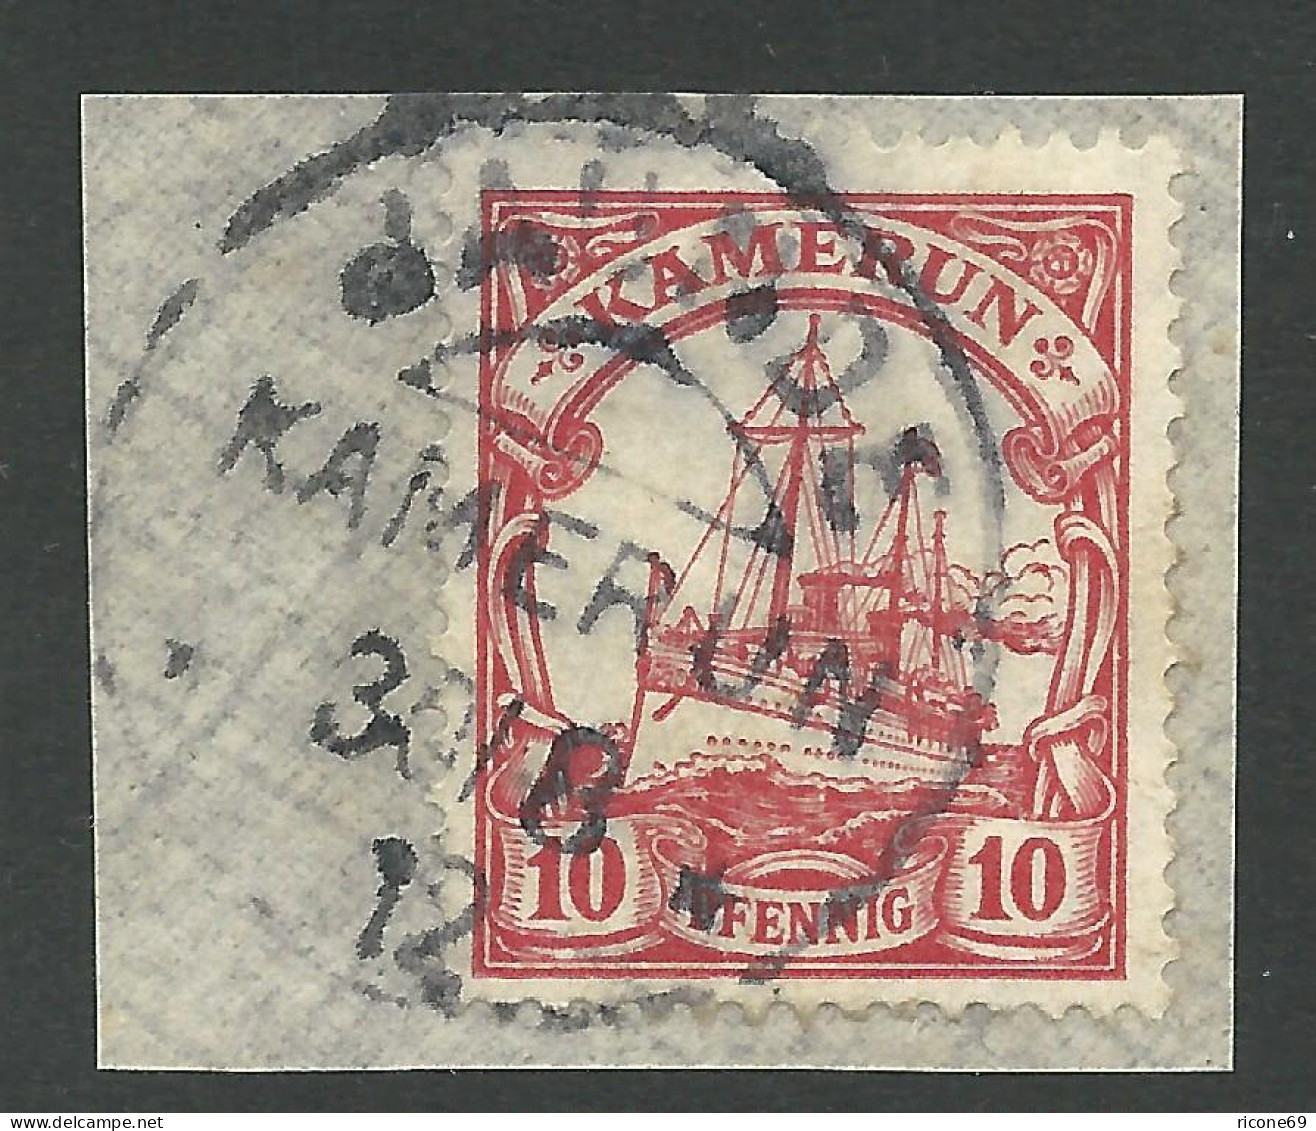 Kamerun 22, 10 Pf. Auf Briefstück M. Stpl. JAUNDE - Kameroen